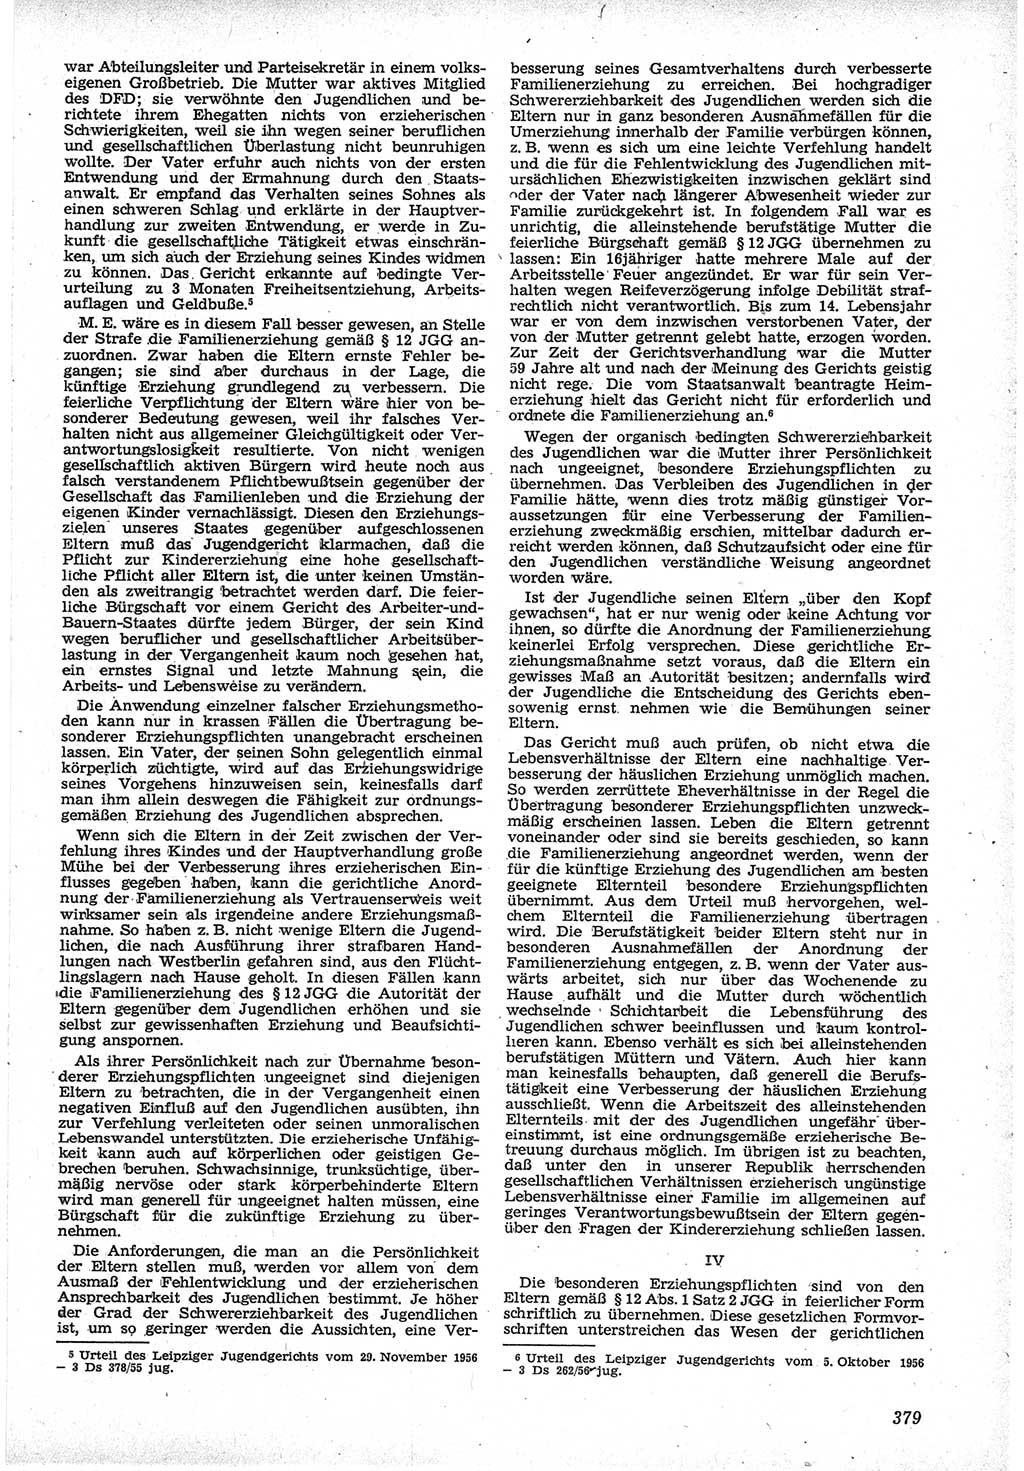 Neue Justiz (NJ), Zeitschrift für Recht und Rechtswissenschaft [Deutsche Demokratische Republik (DDR)], 12. Jahrgang 1958, Seite 379 (NJ DDR 1958, S. 379)